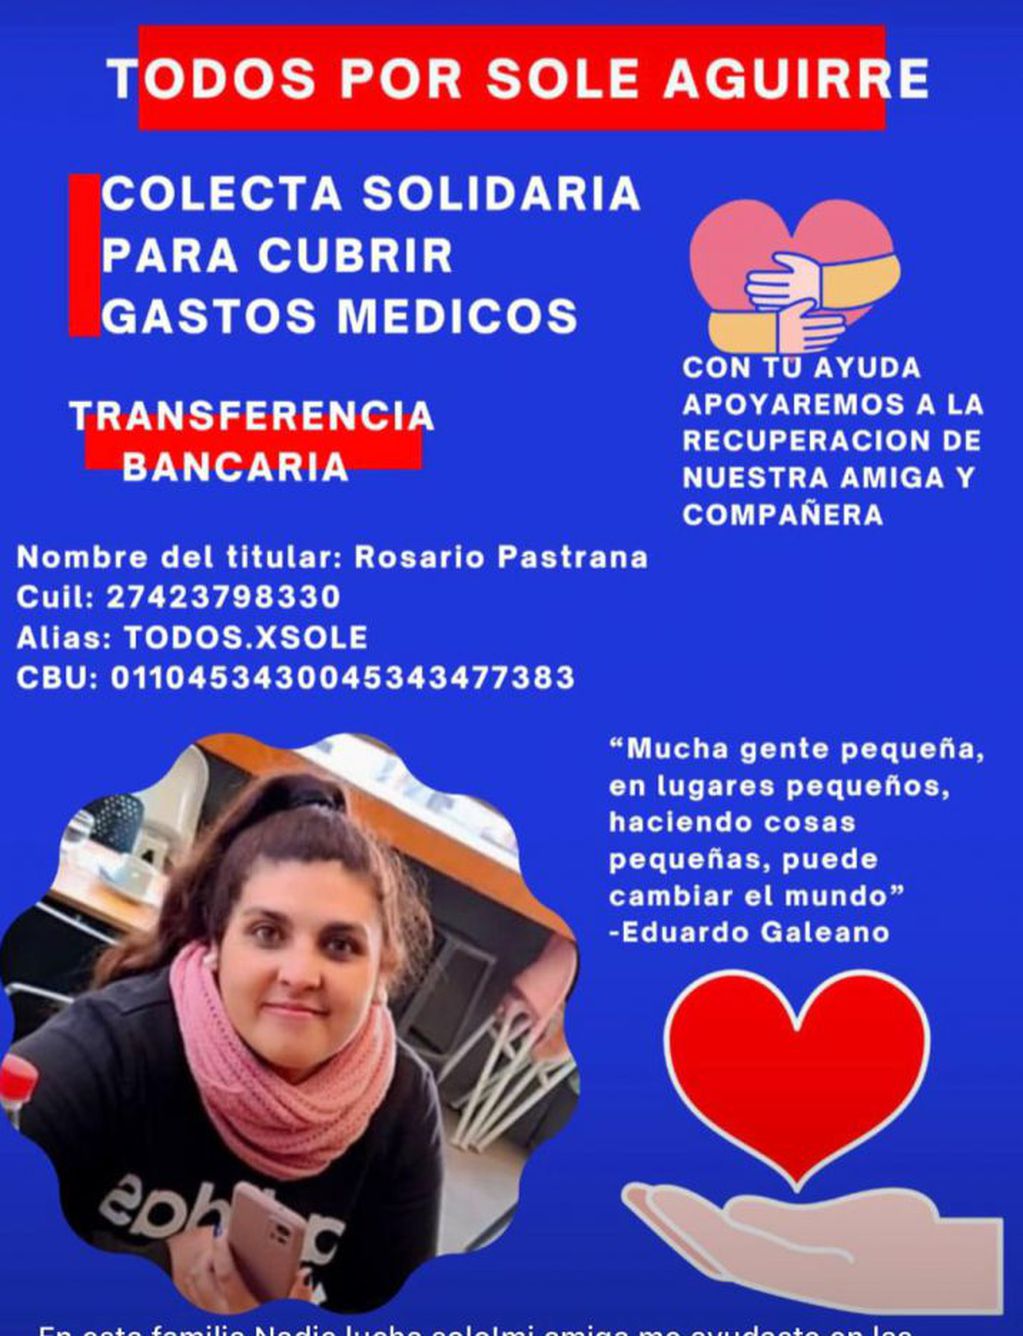 La colecta solidaria que realizaron sus familiares para ayudar a Soledad Aguirre.